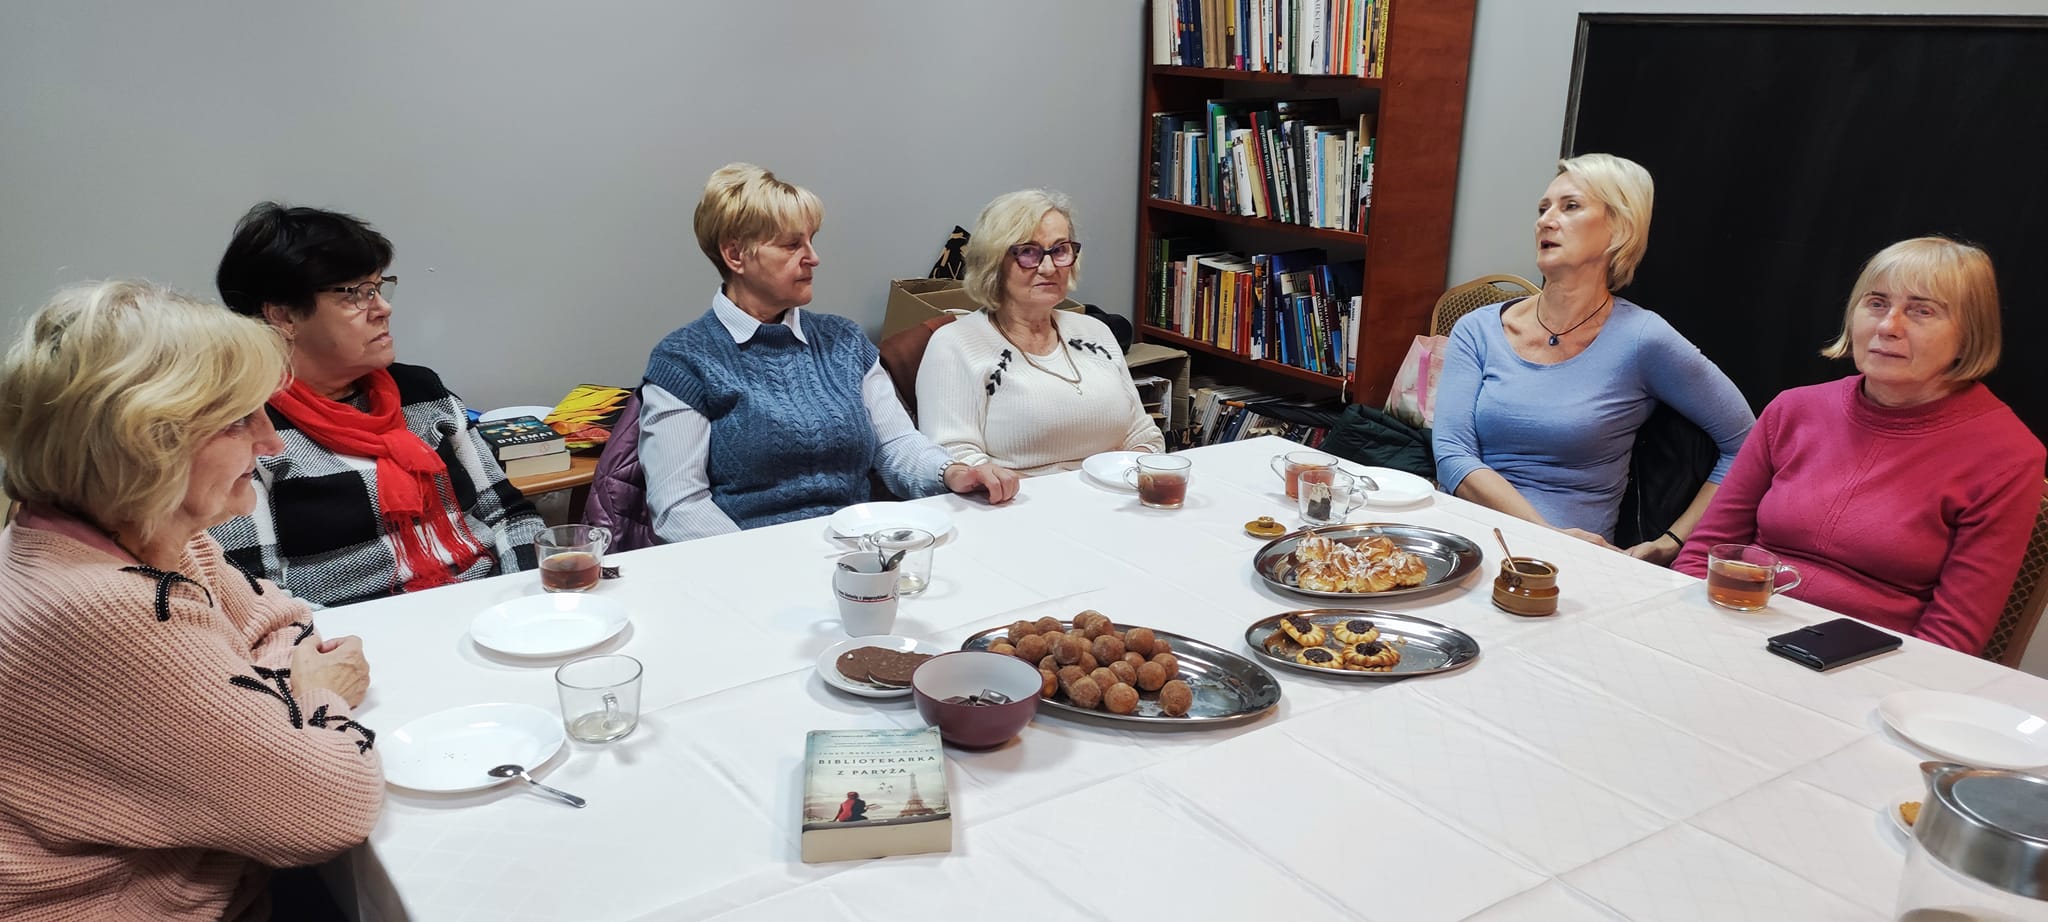 grupa kobiet siedzi przy stole. na stole ciasteczka, kubki z kawą oraz książka